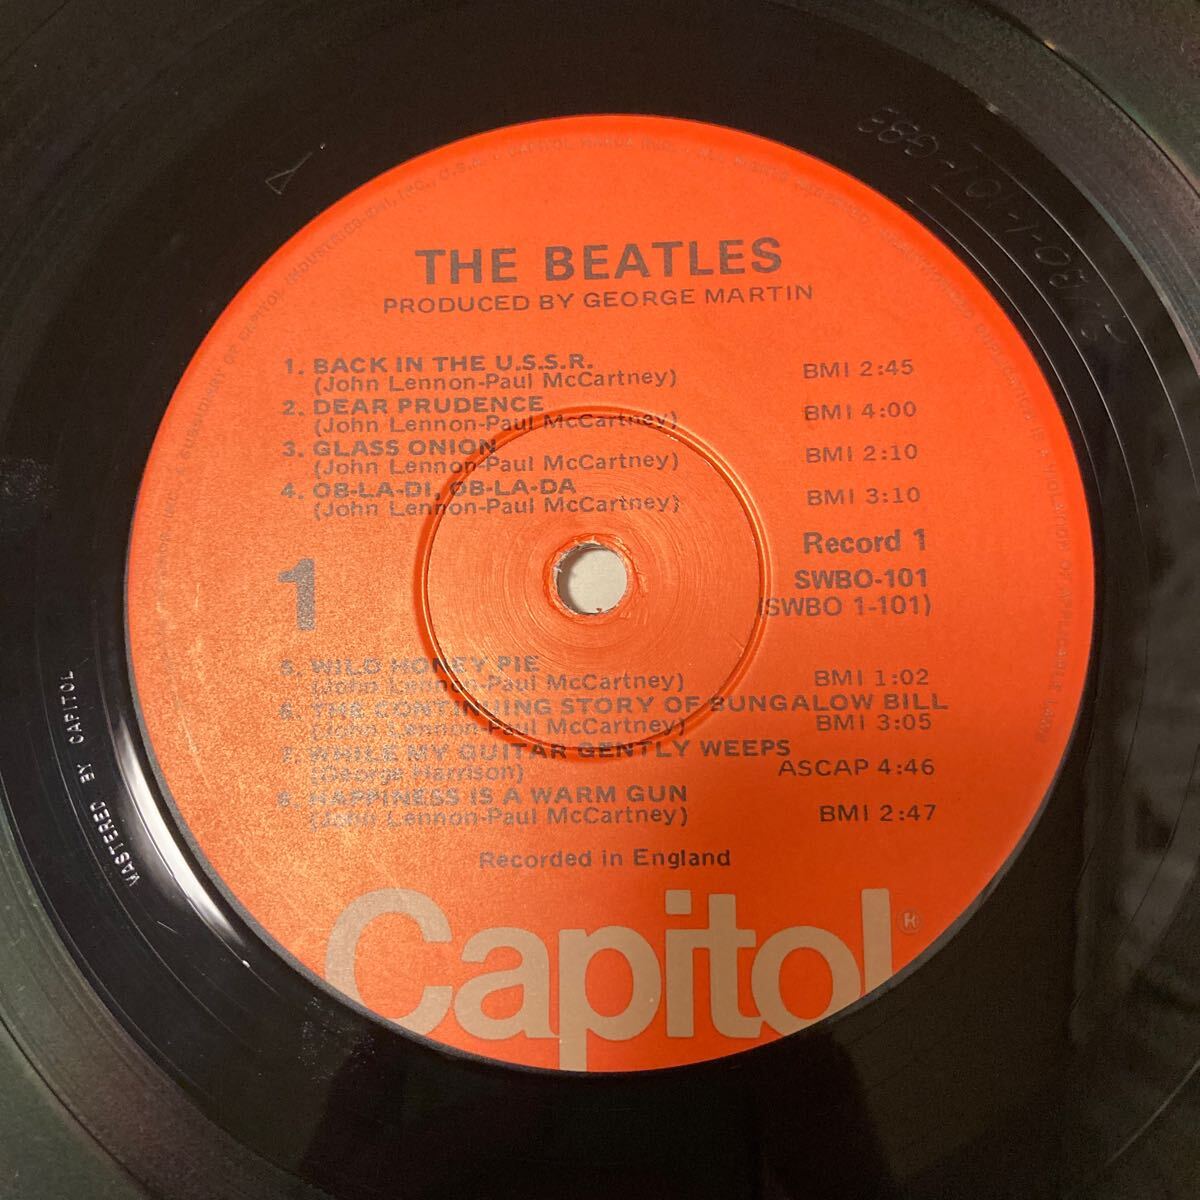 The Beatles ビートルズ / The Beatles ホワイト・アルバム Capitol Records / SWBO 101/ピンナップ / ポスター 付き masterd capitol 刻印_画像7